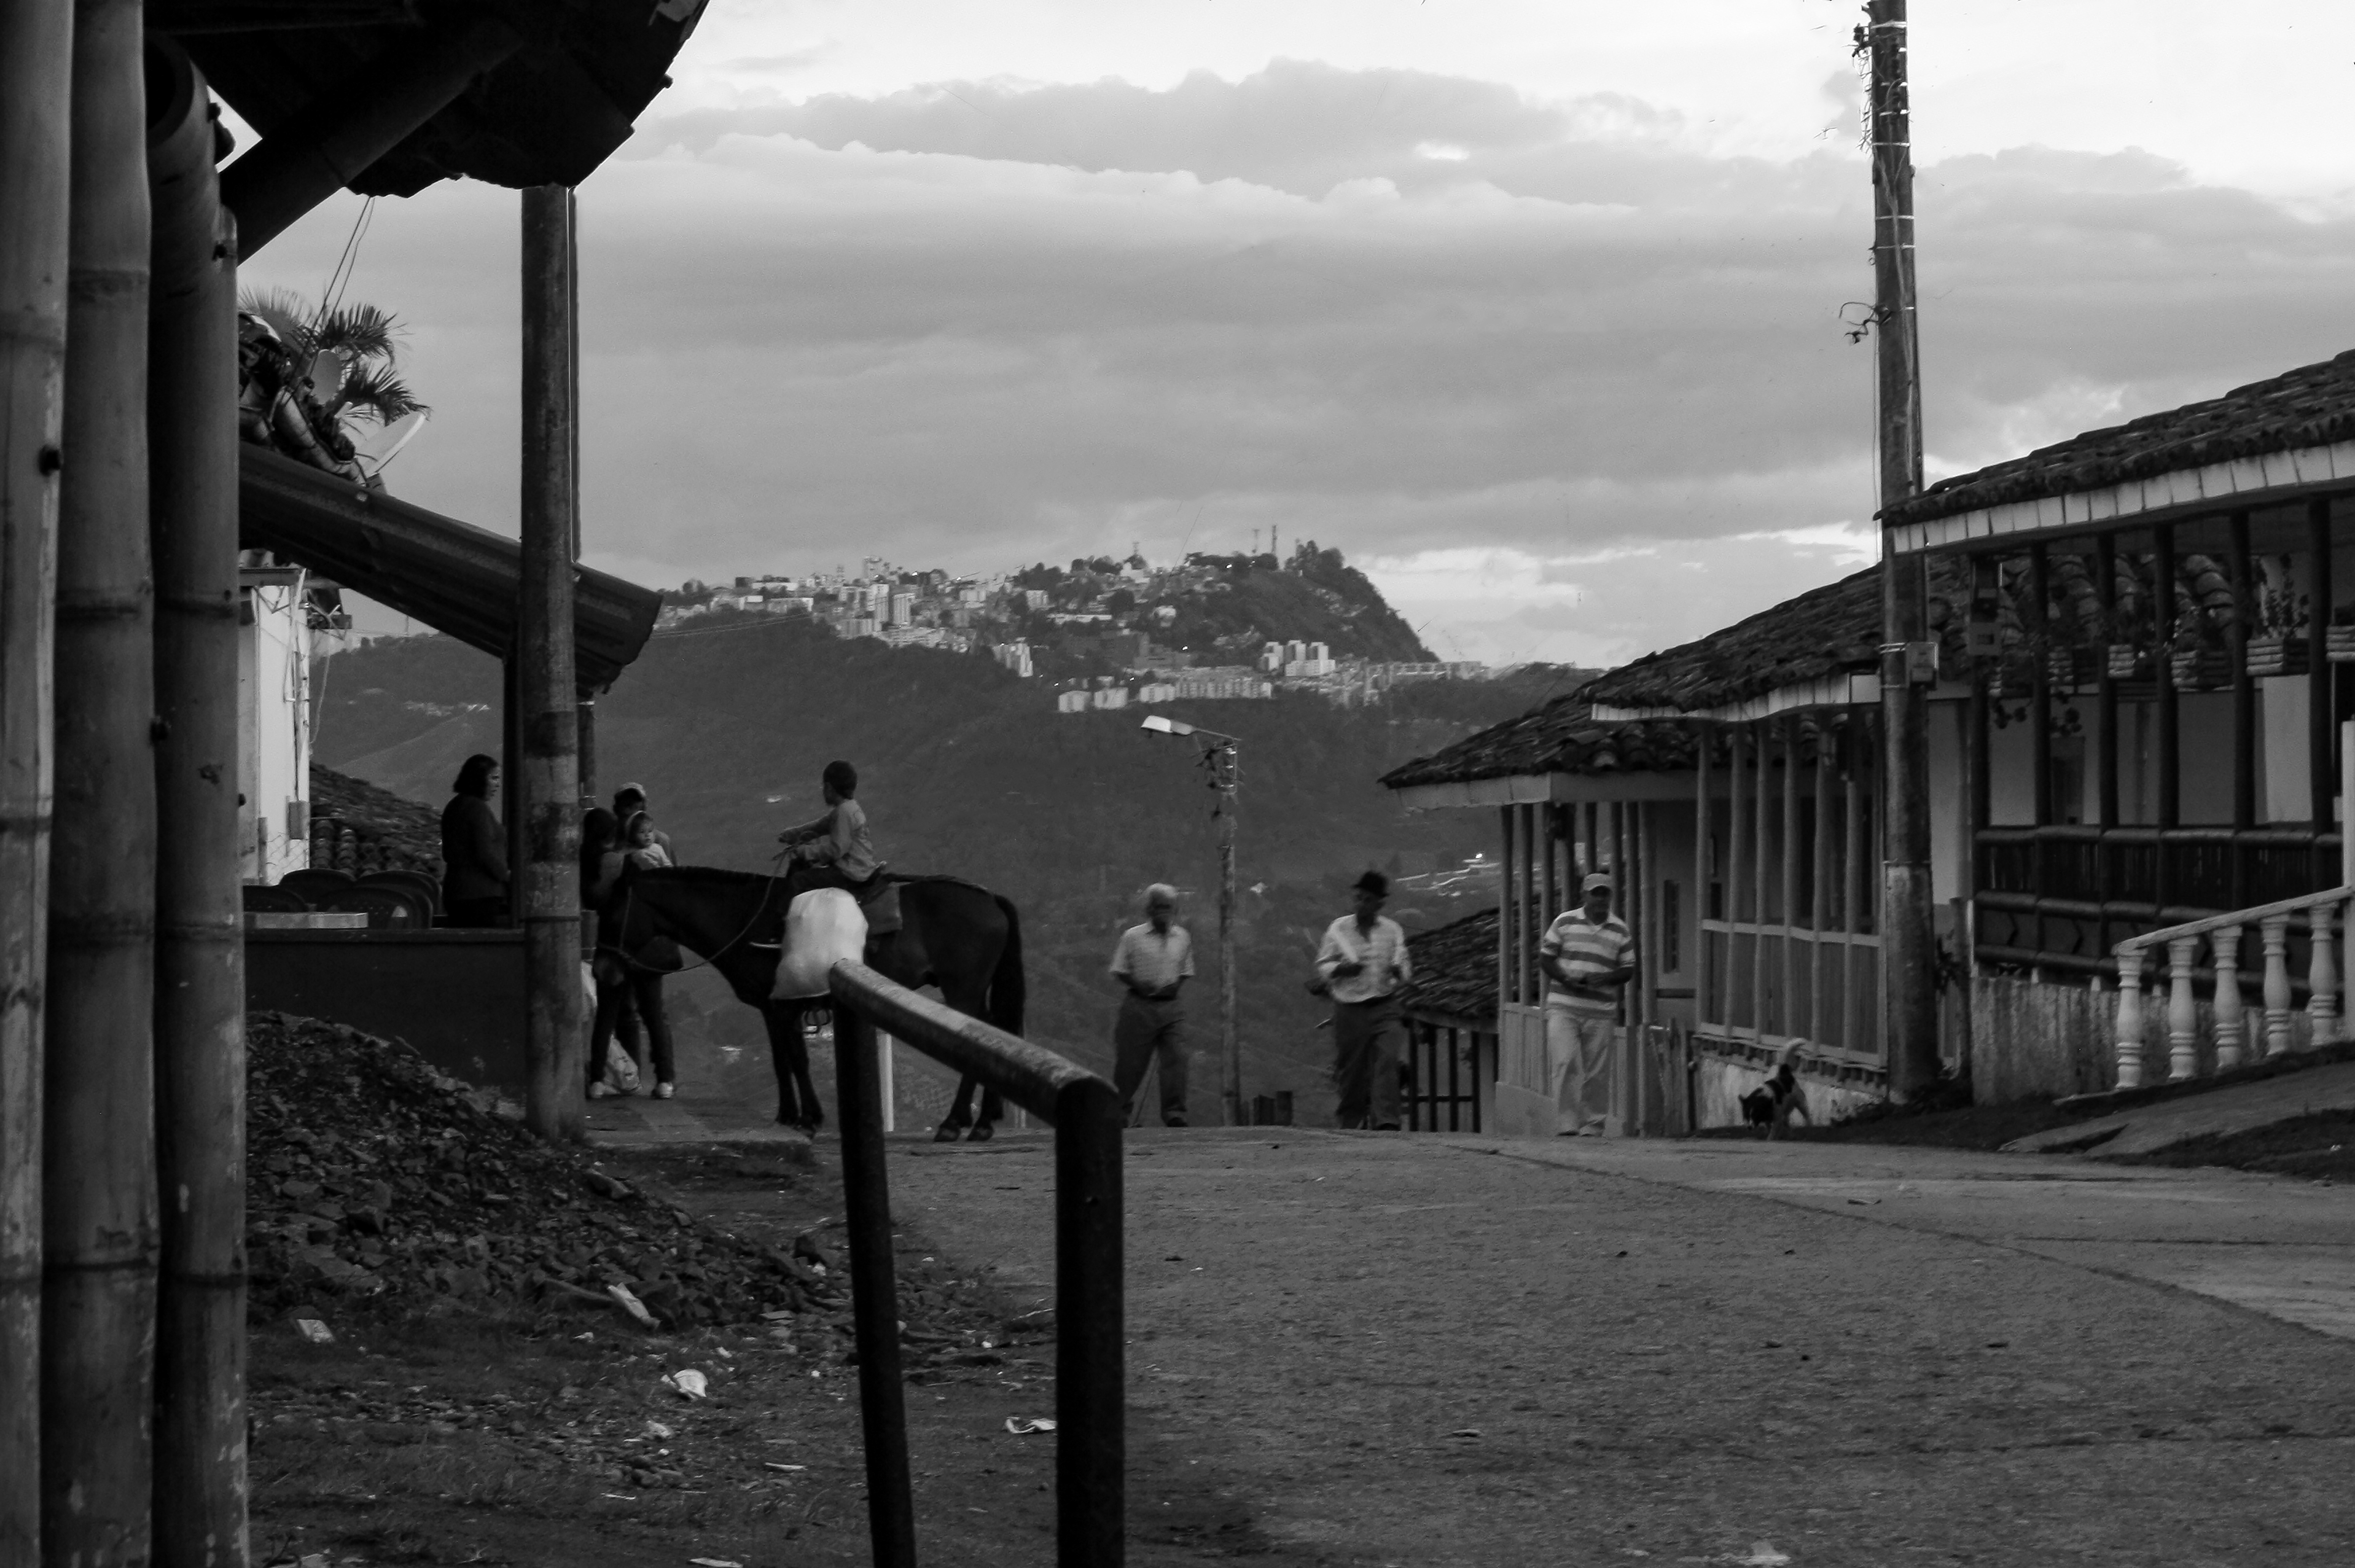 Afternoon at the village Pueblo Bonito, Caldas, Colombia